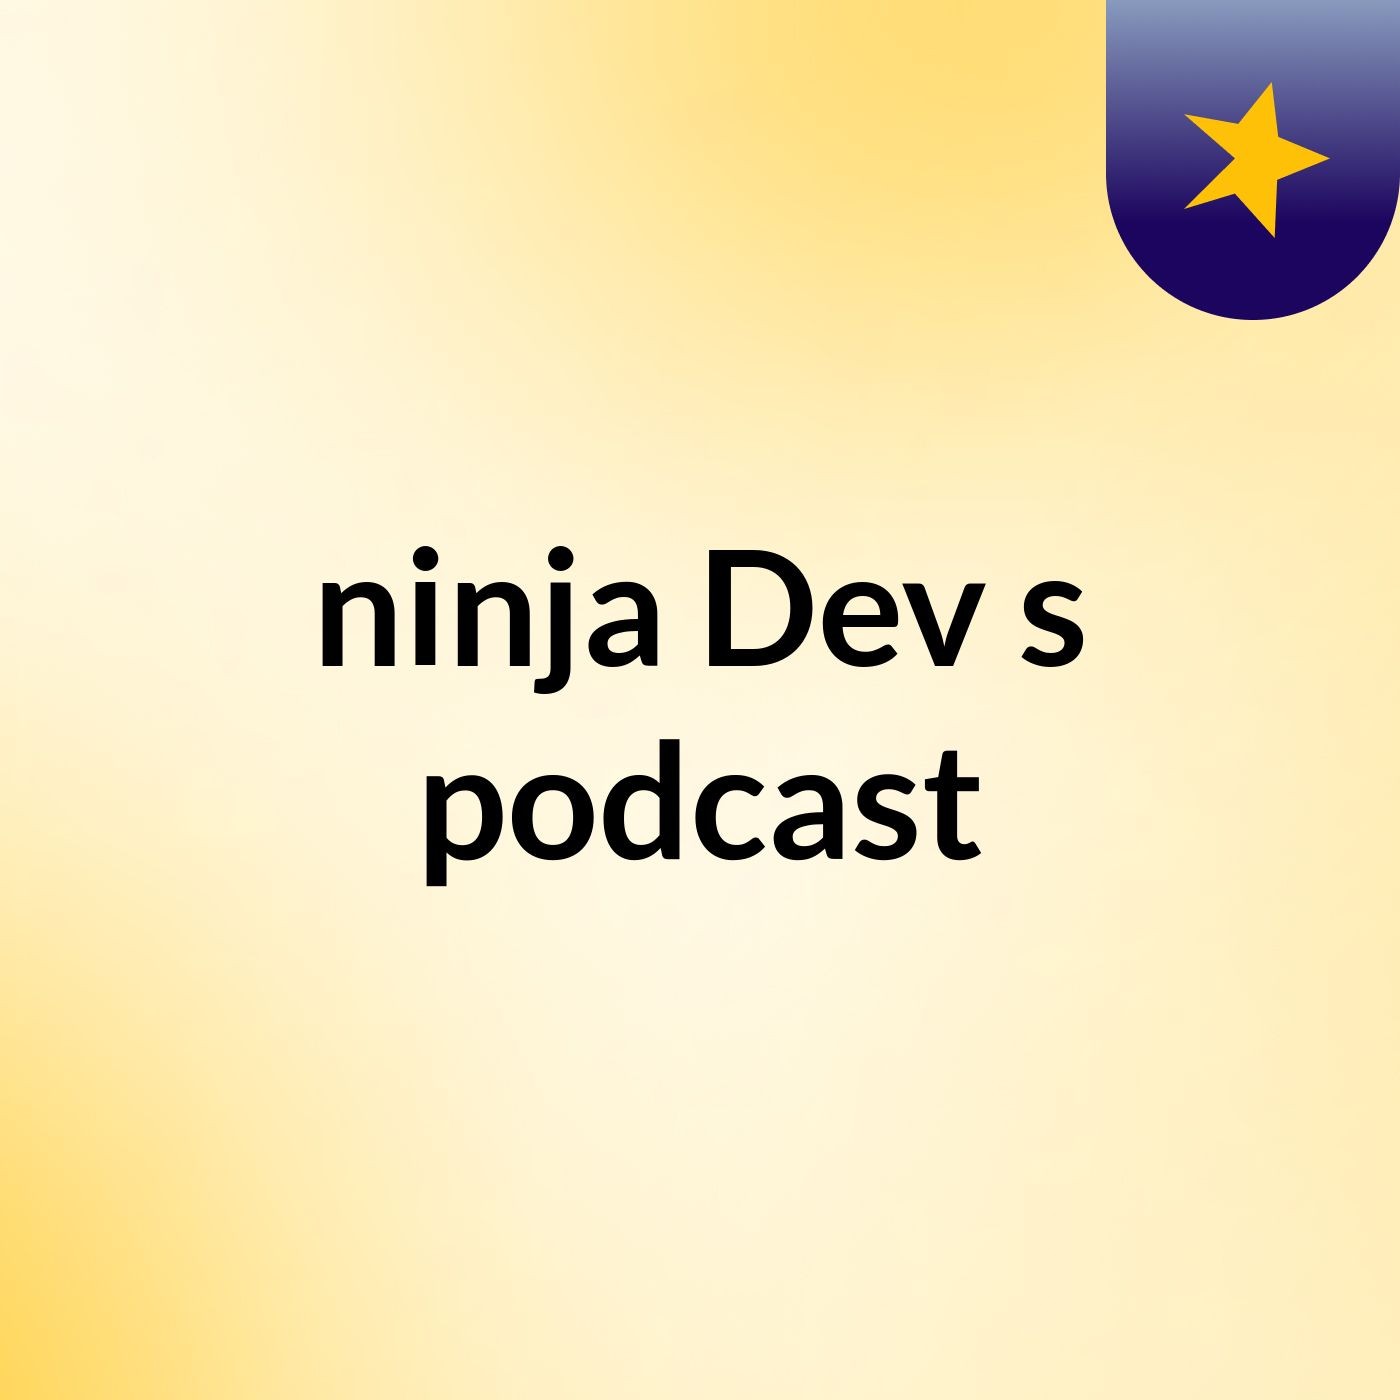 Episode 5 - ninja Dev's podcast